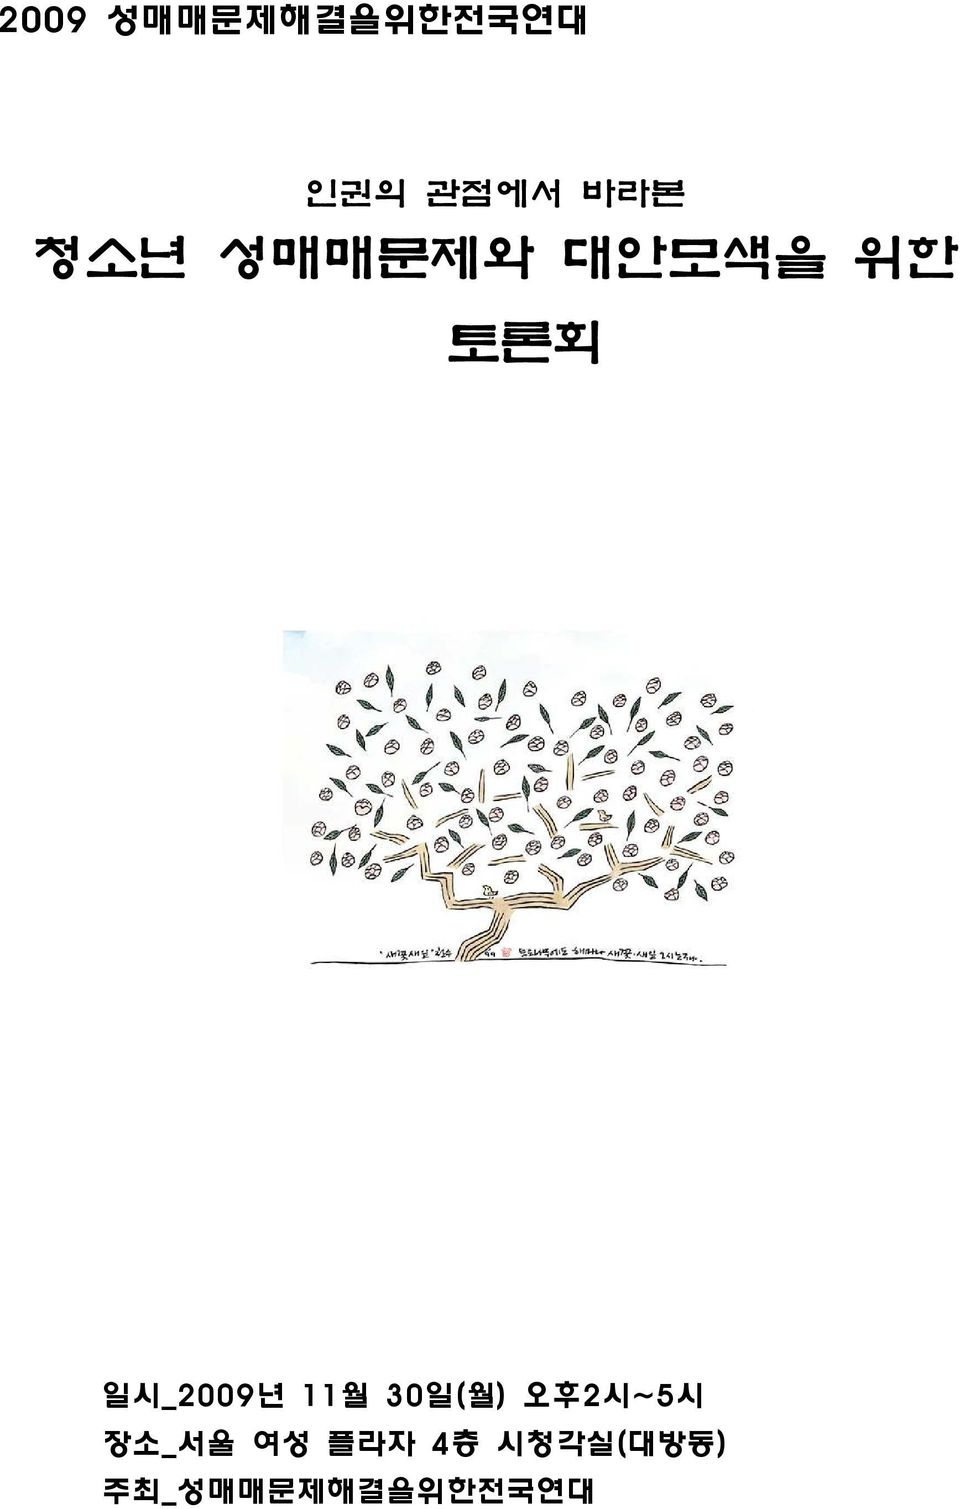 11월 30 일( 월) 오후2 시~5시 장소_ 서울 여성